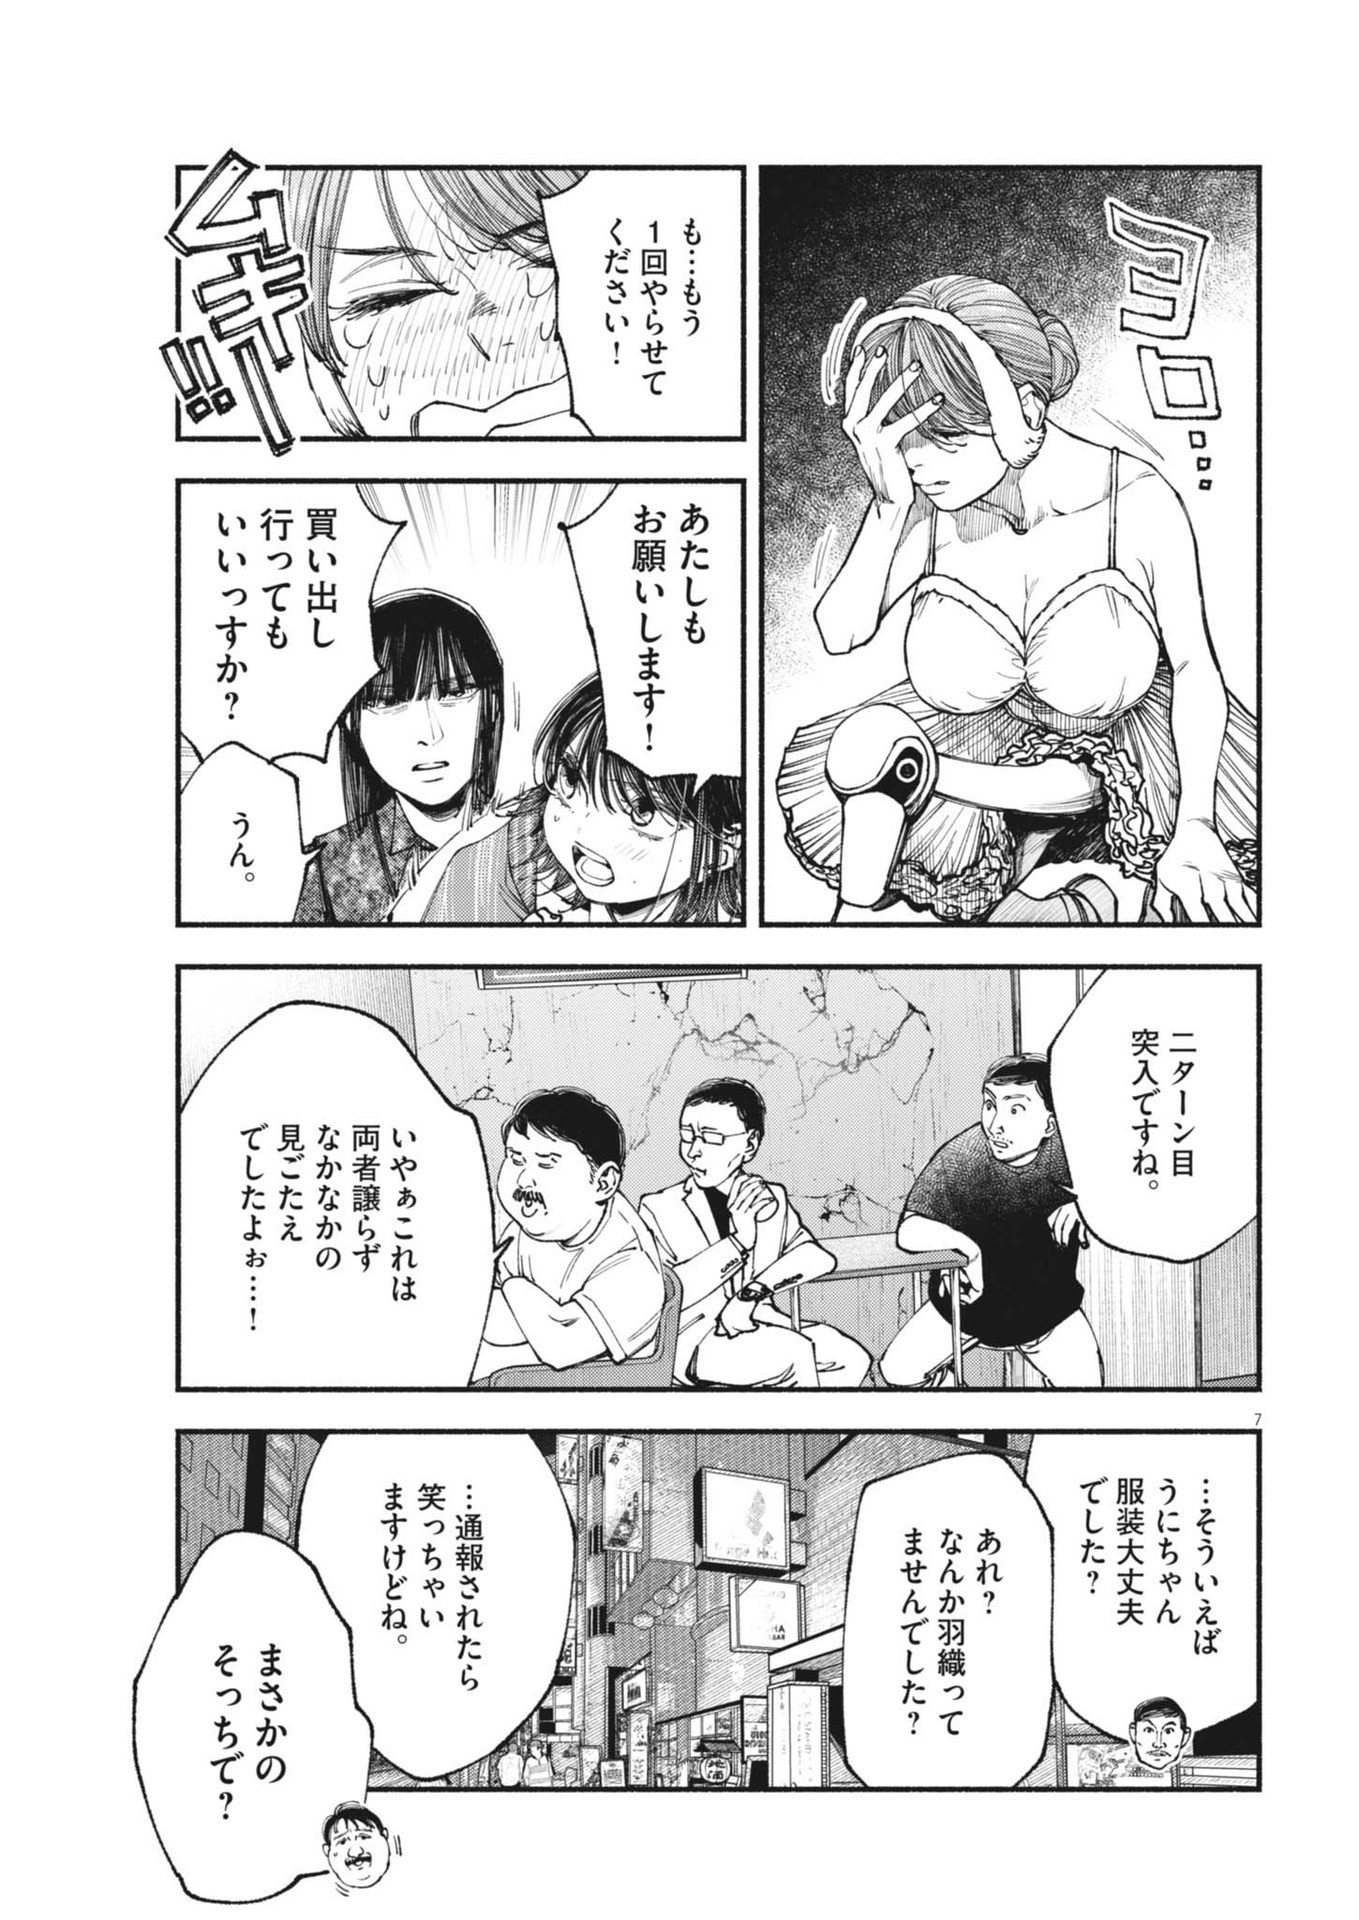 Konoyo wa Tatakau Kachi ga Aru  - Chapter 22 - Page 7